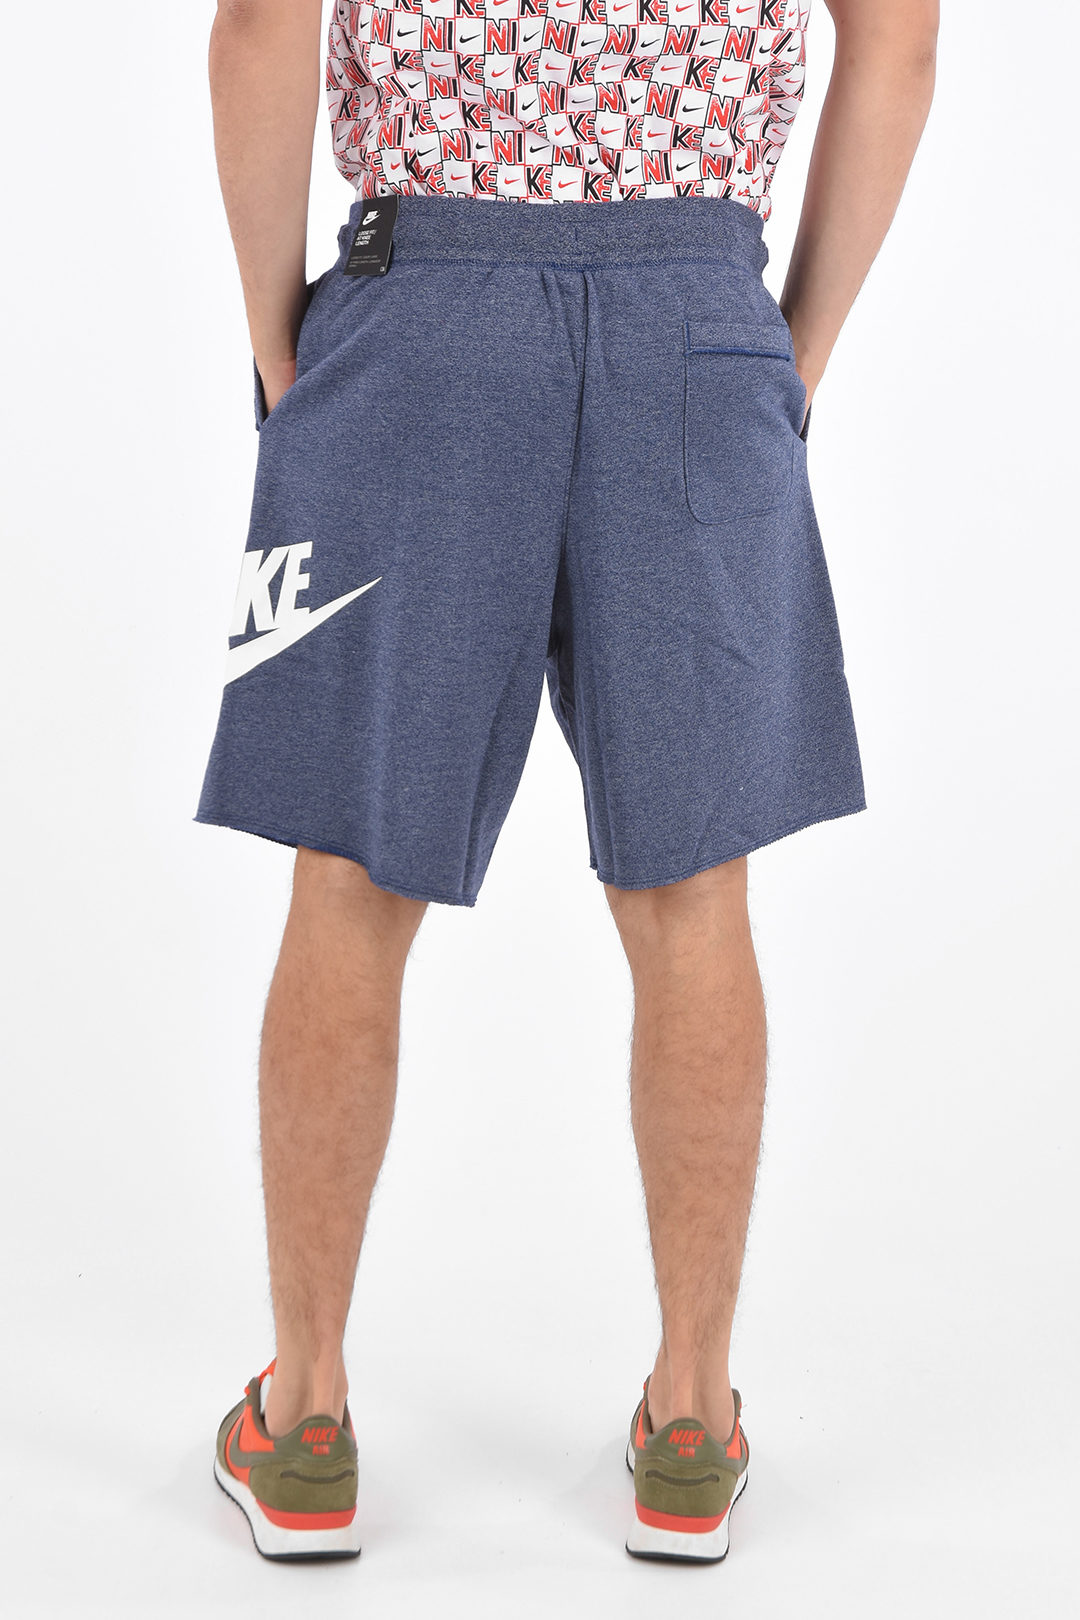 Woord heldin Creatie Nike Jersey Shorts men - Glamood Outlet